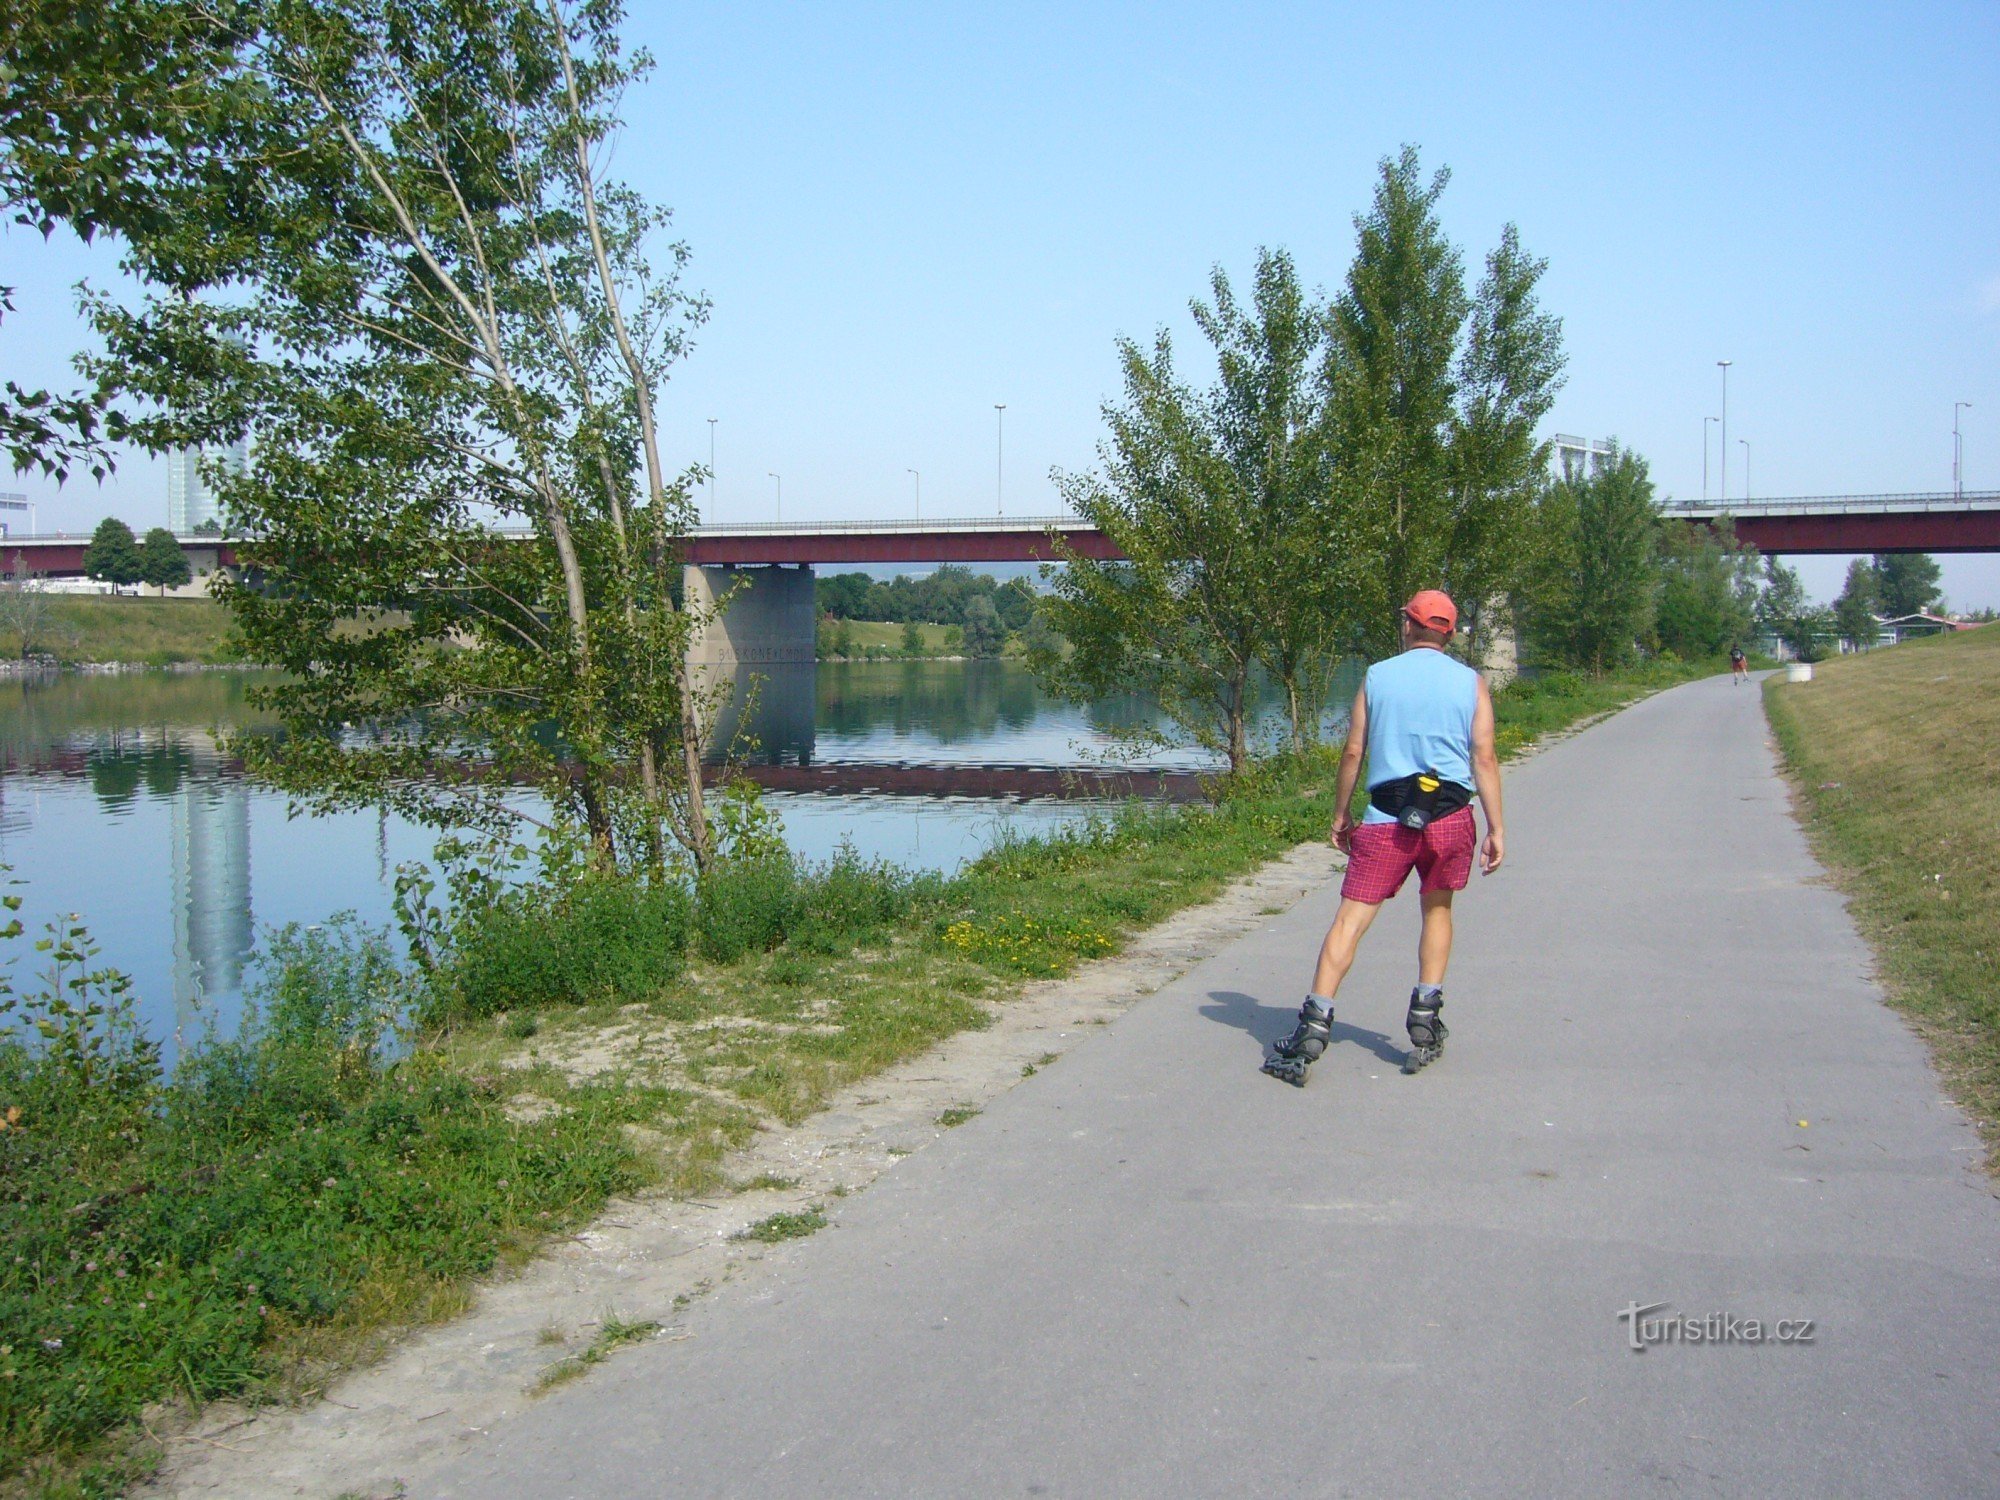 wienske cykelstier langs Donau på In-lines - når du først har prøvet det, vil du gerne vende tilbage